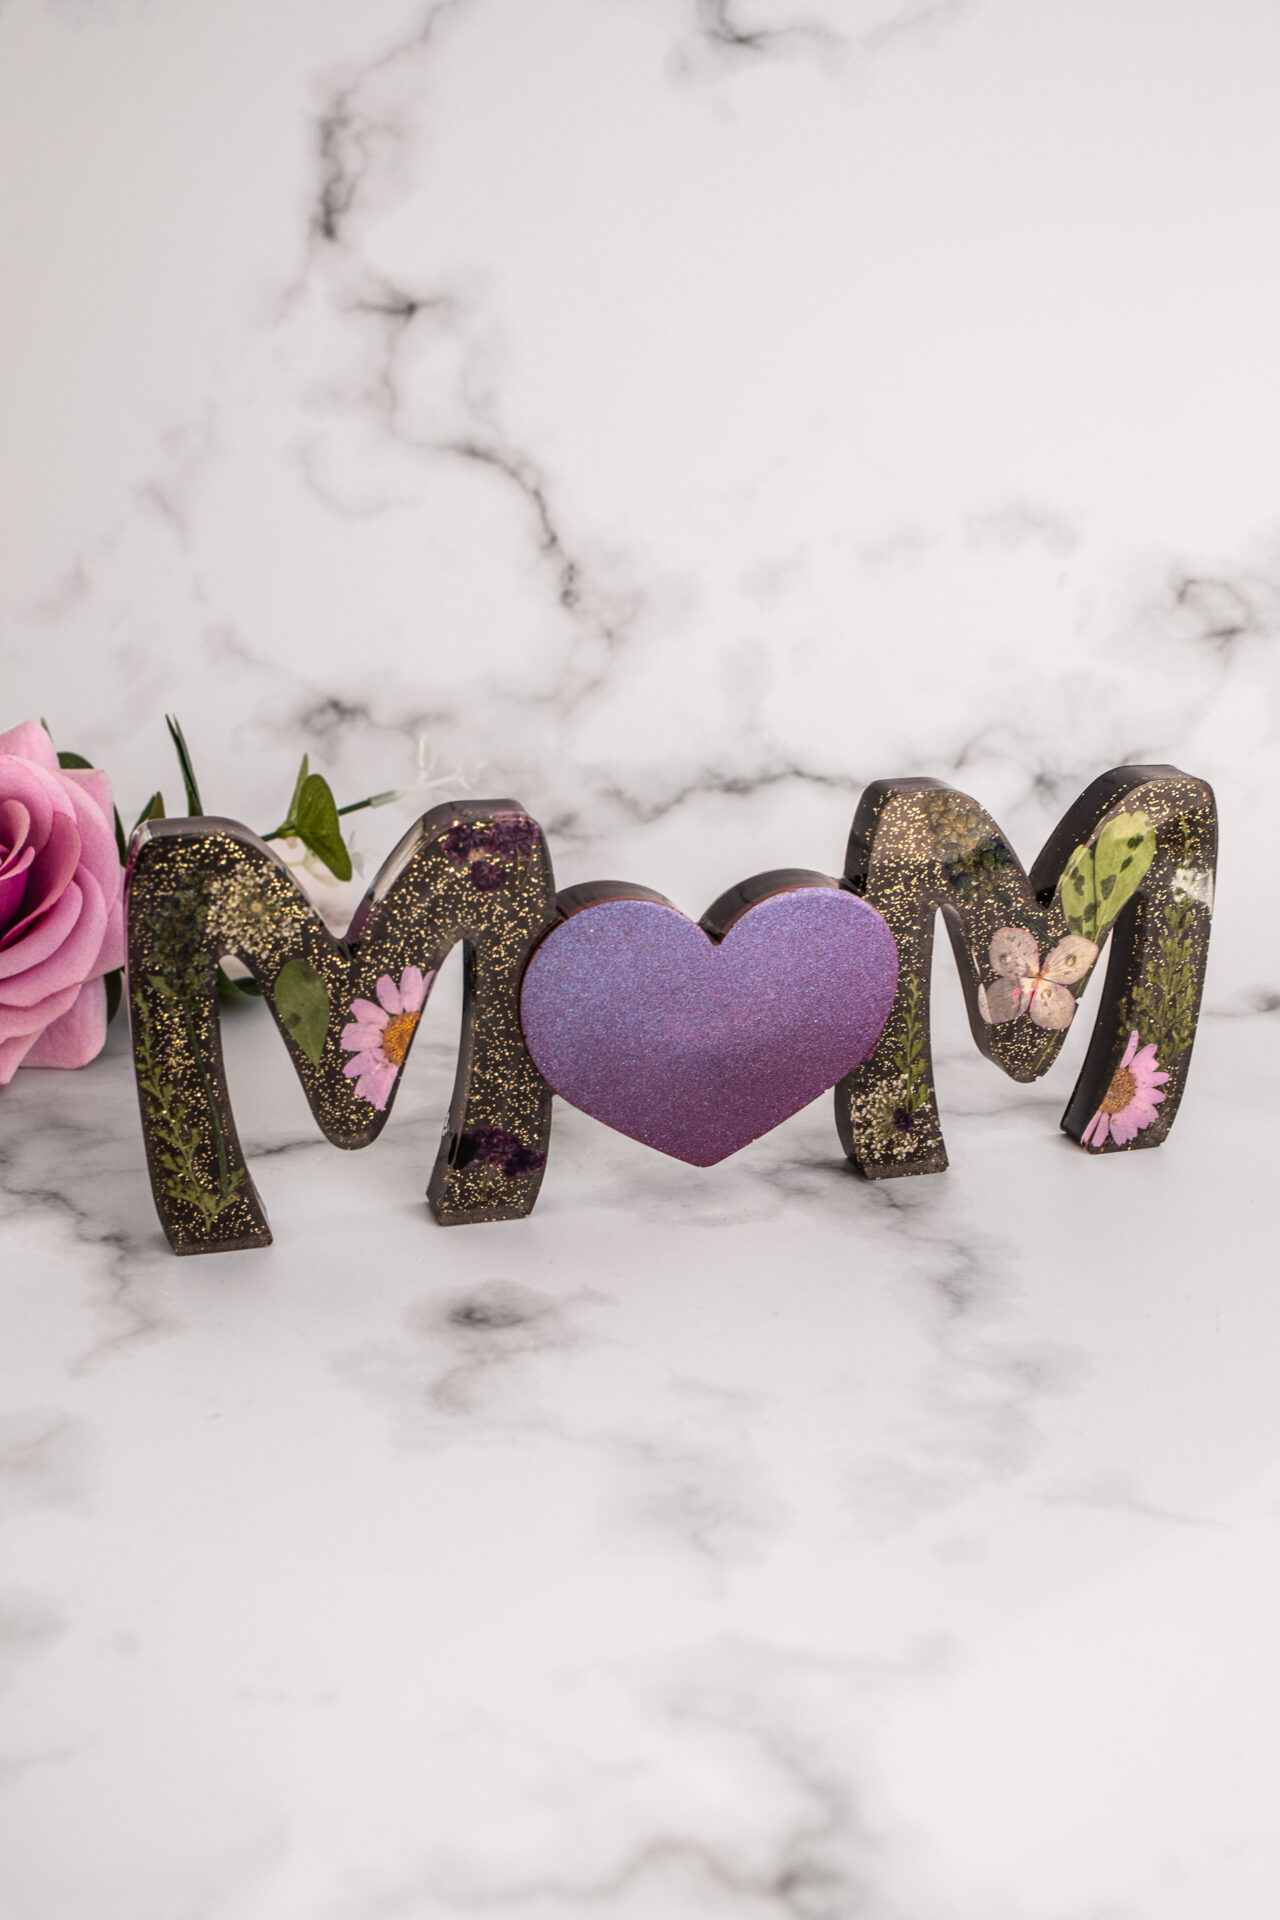 Décoration mot MOM noir fleur - Boutique en ligne d'idées cadeau et de décoration pour la fête des mères ou pour un anniversaire